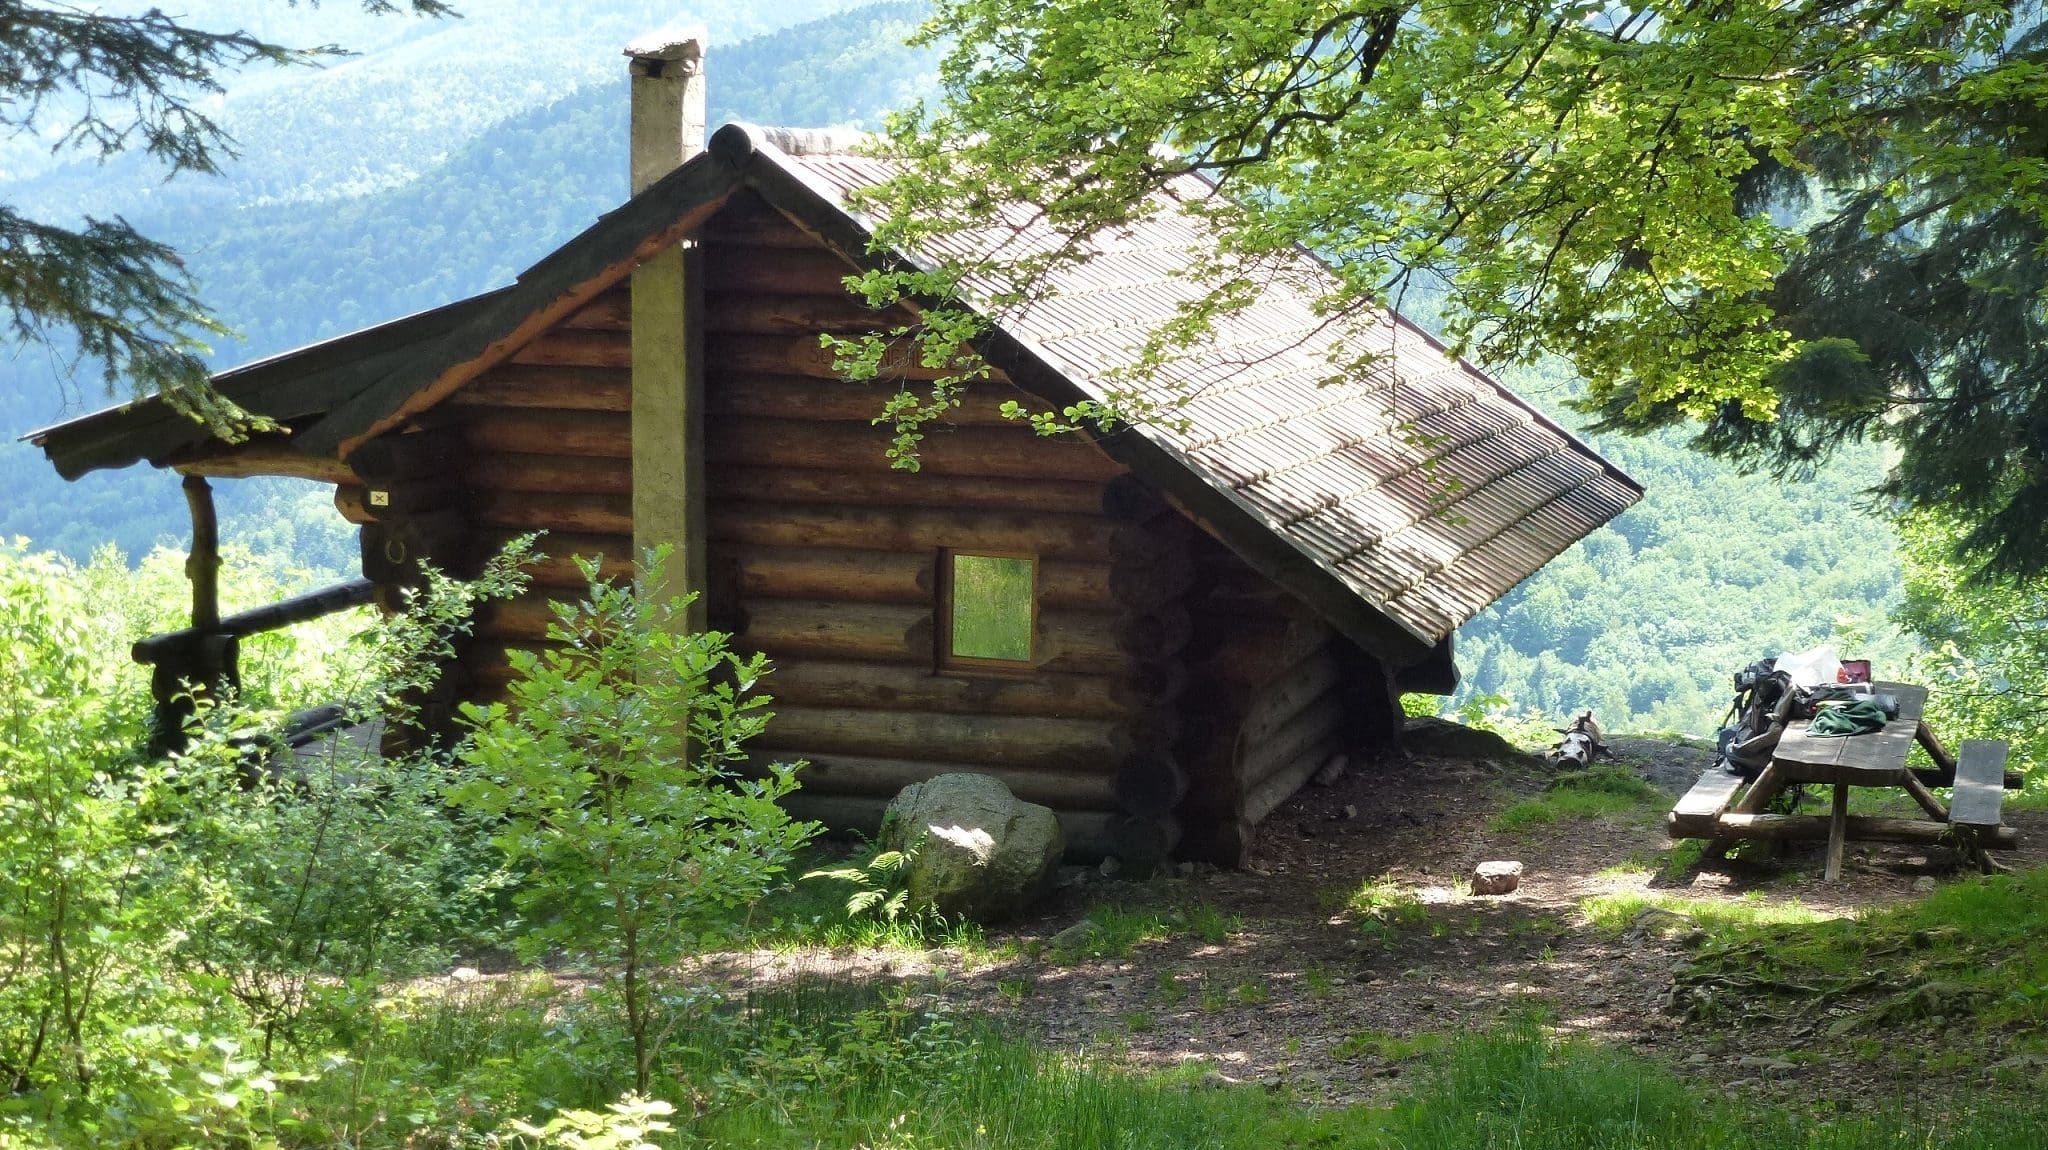 Comment randonner et dormir dans les Vosges sans porter sa tente ?